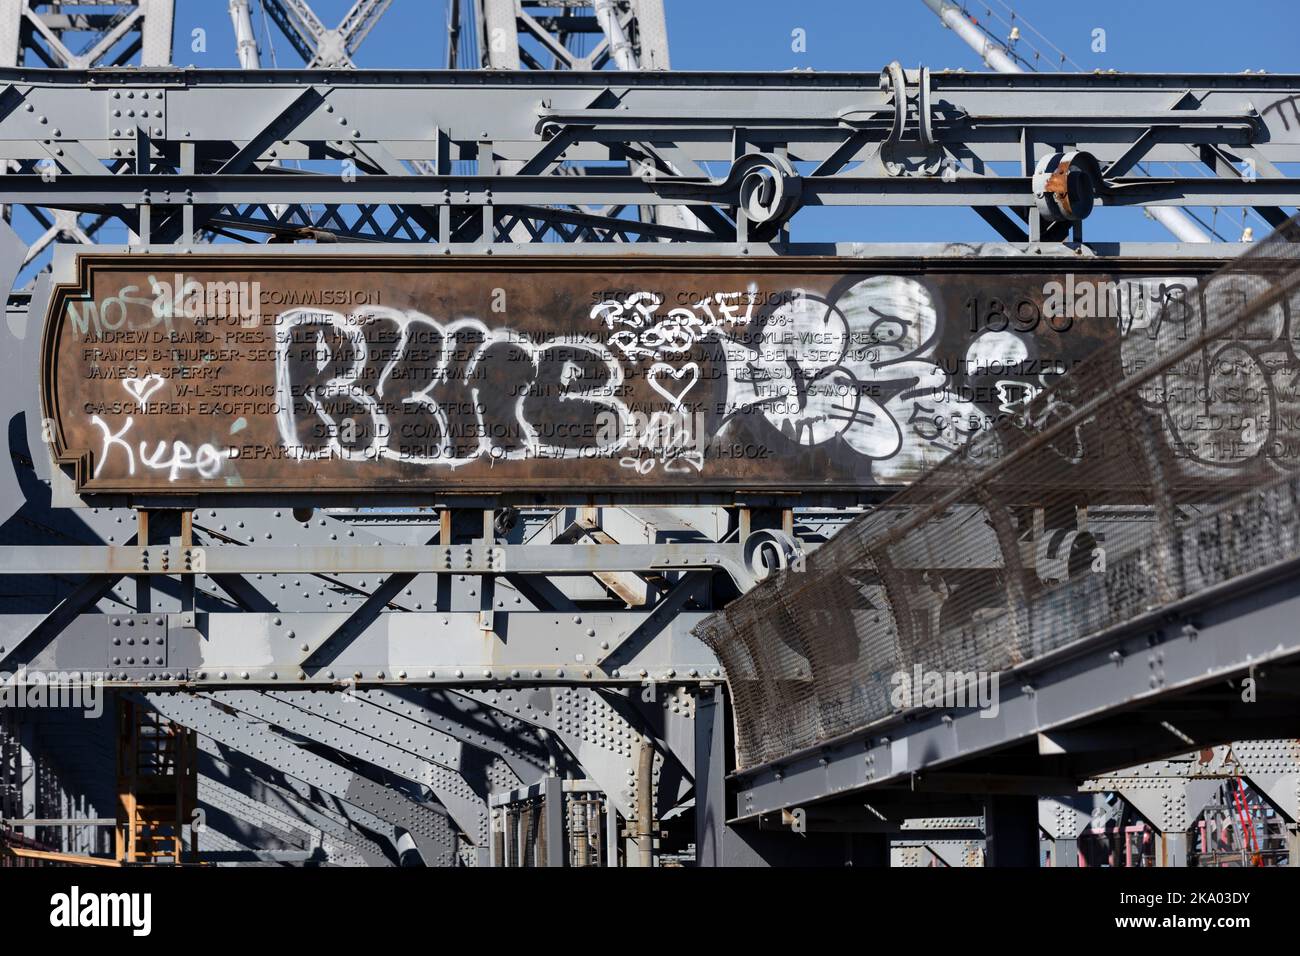 Stahlarbeiten auf der Williamsburg Bridge, New York City Stockfoto